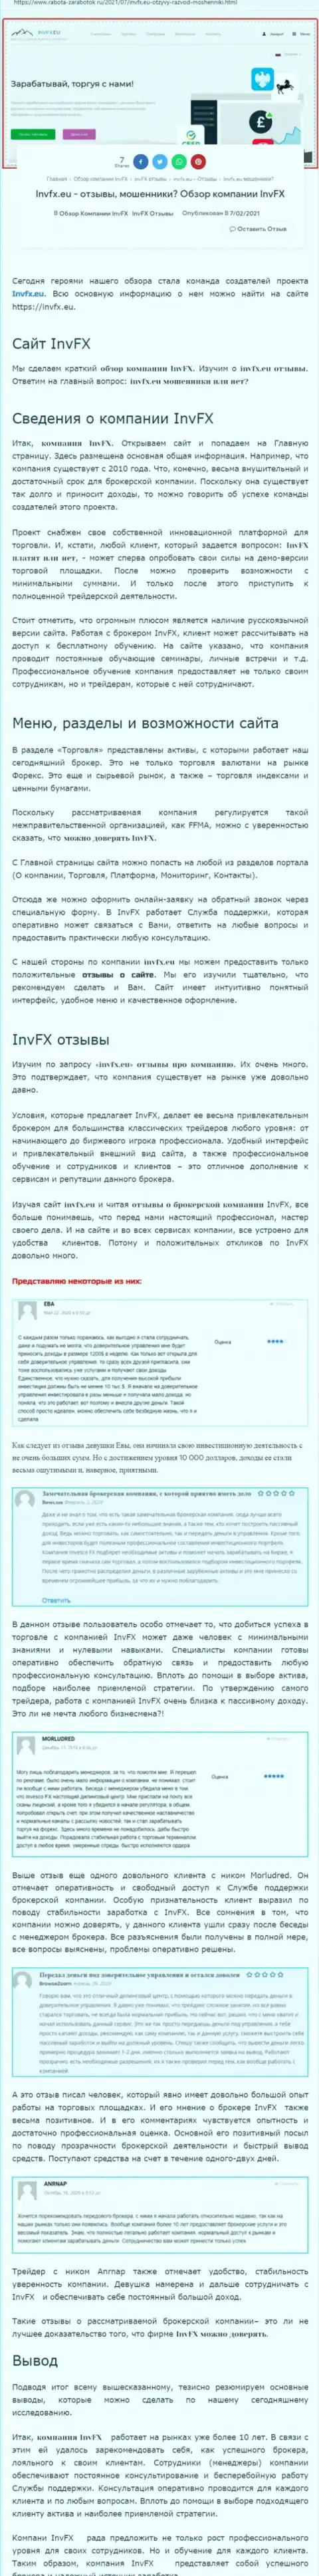 Обзор сайта работа заработок ру об форекс брокерской организации Инвеско Лтд